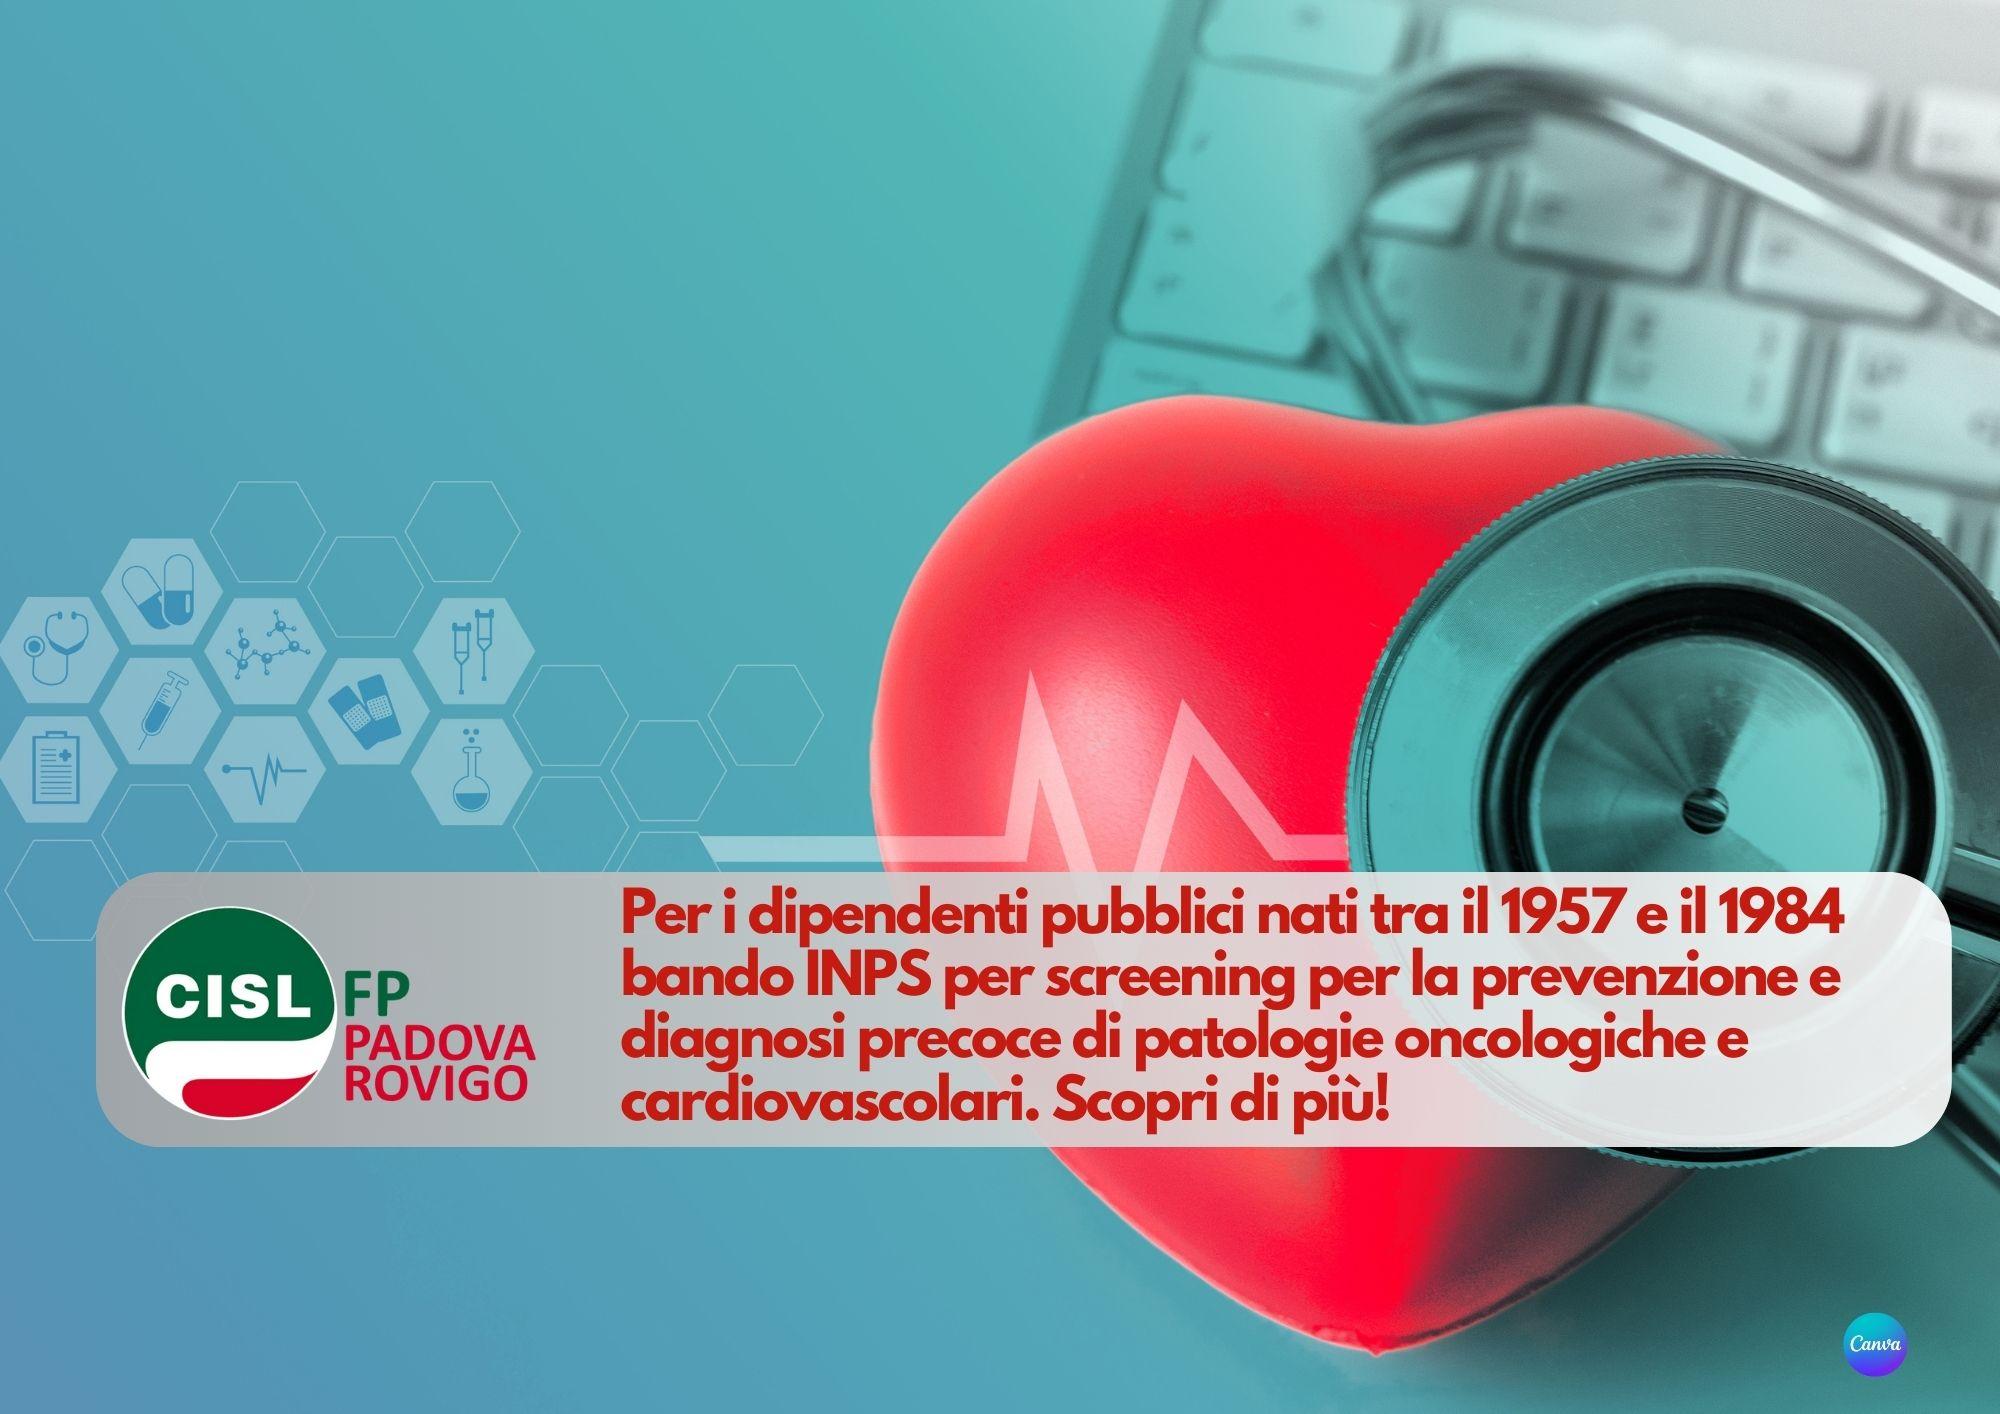 CISL FP Padova Rovigo. Pubblico impiego: bando INPS screening patologie oncologiche e cardiovascolari